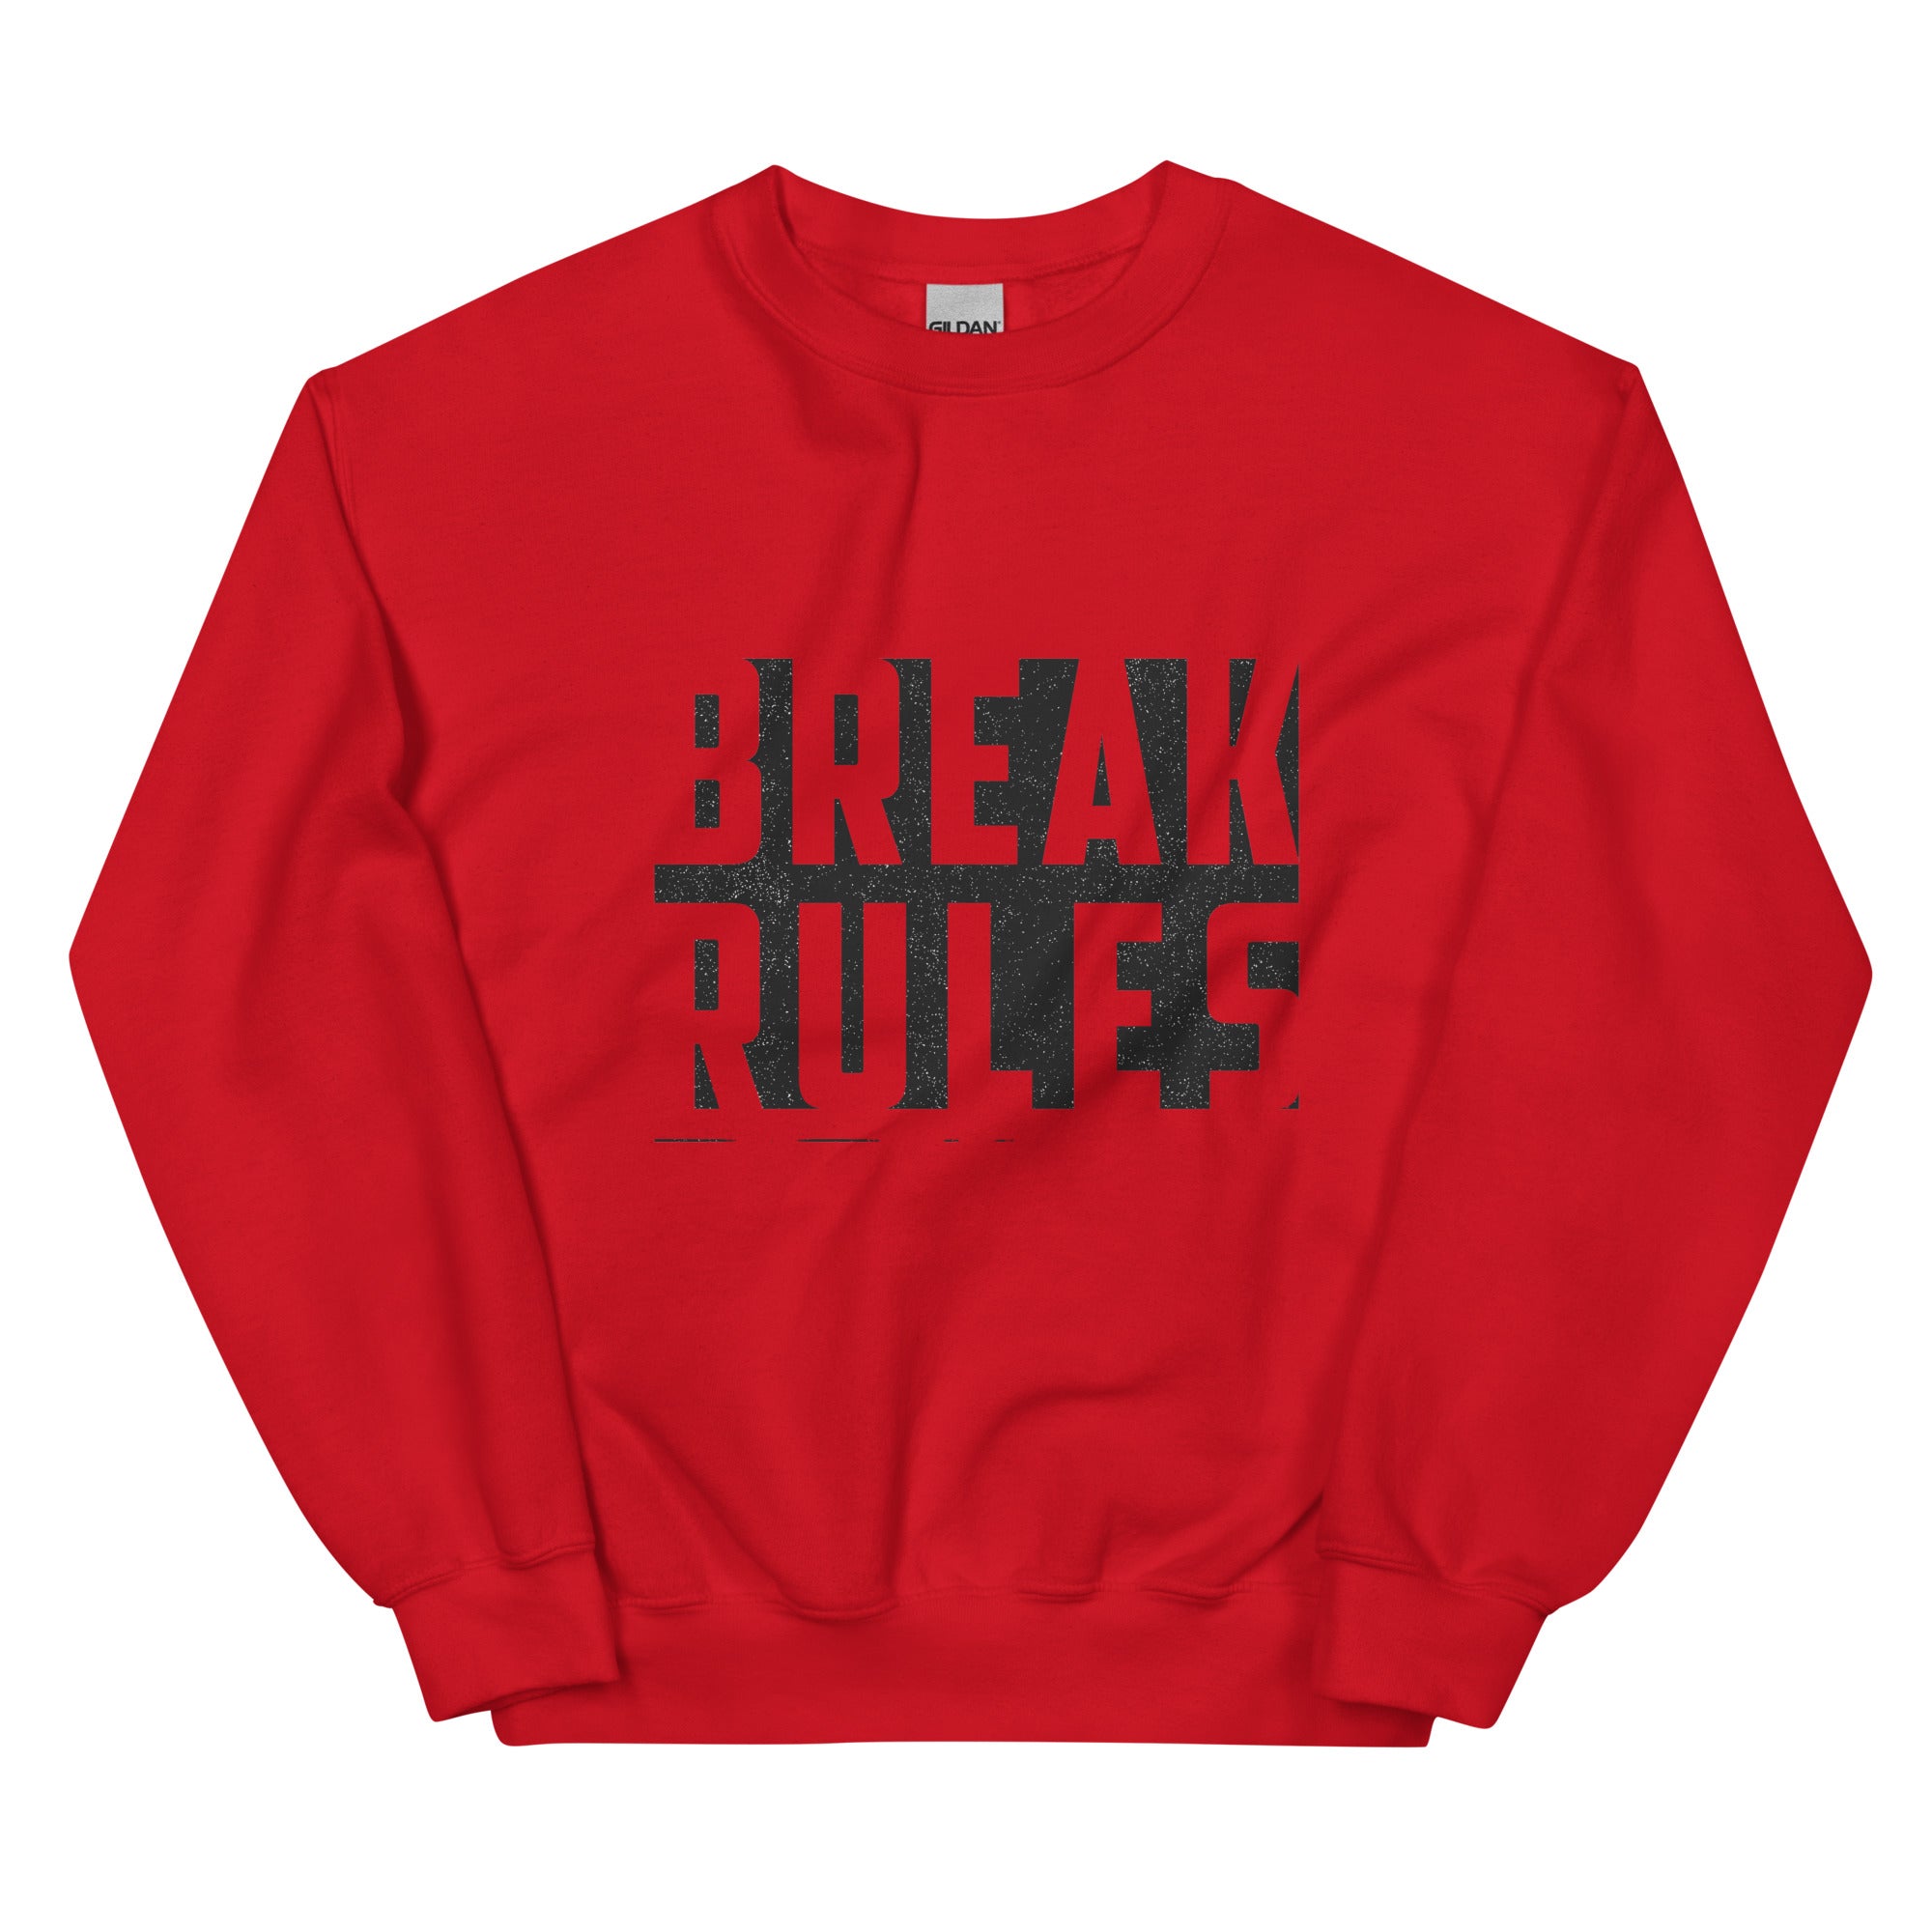 Break Sweatshirt for women